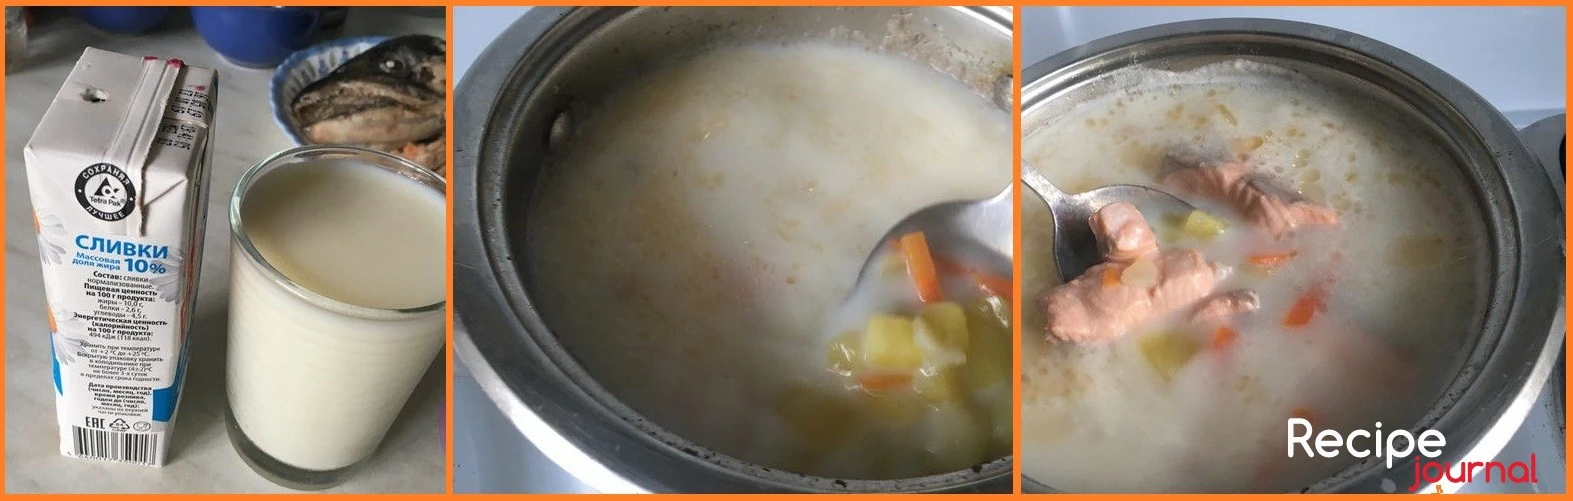 Когда картофель сварился, следует размять несколько кусочков, чтобы суп стал более густым. Теперь удаляем лук, его можно выбросить, солим и добавляем молоко и сливки. Доводим суп до кипения, опускаем кусочки рыбы и лавровый лист. Снова даем супу закипеть, выключаем огонь и накрываем суп крышкой. Рыба должна 